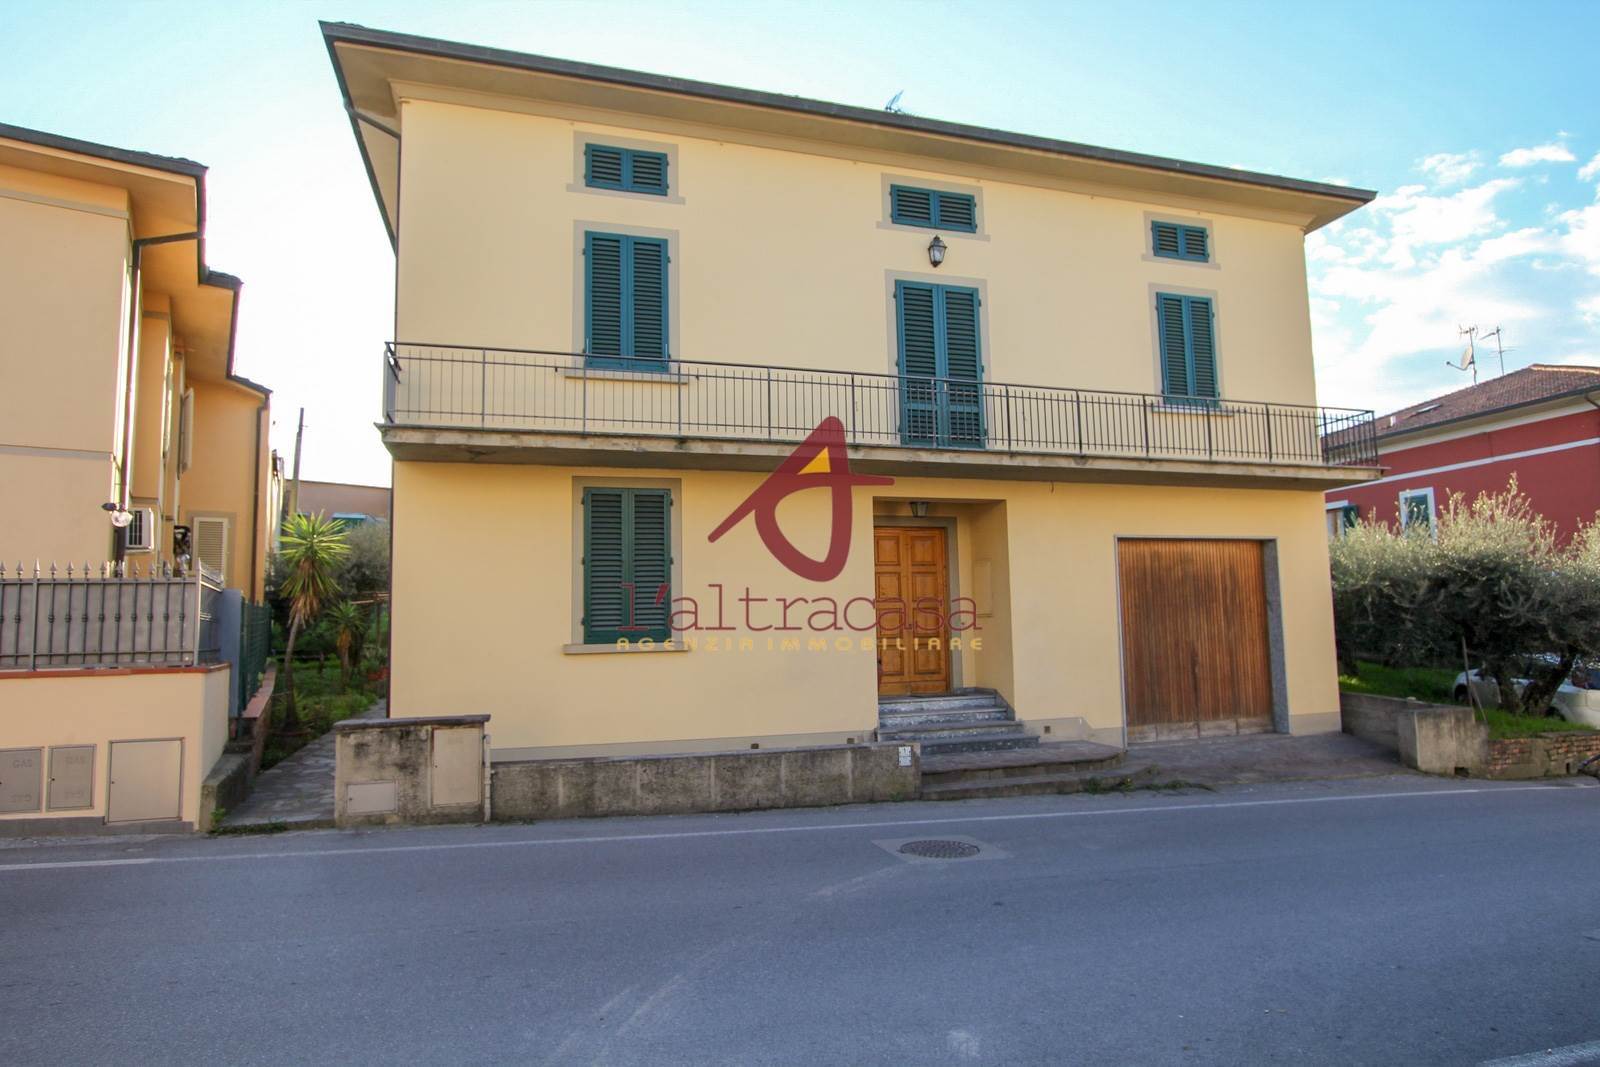 Soluzione Indipendente in vendita a Lamporecchio, 8 locali, prezzo € 285.000 | PortaleAgenzieImmobiliari.it